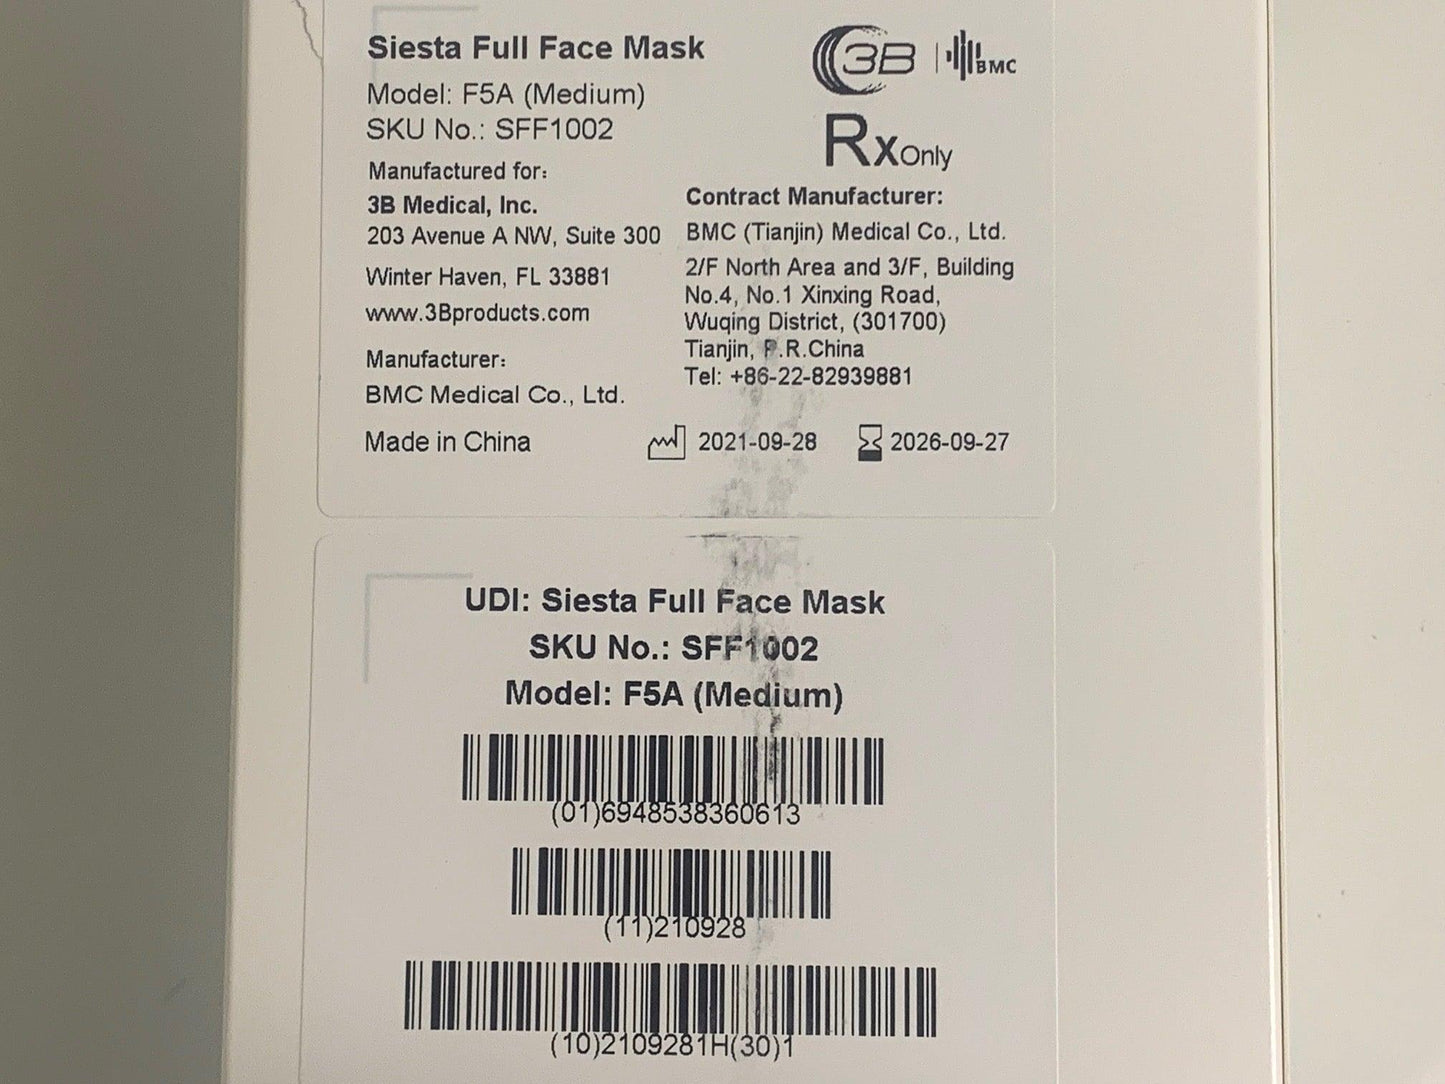 NEW 3B Medical Siesta Model F5A Medium Full Face Mask with Headgear SFF1002